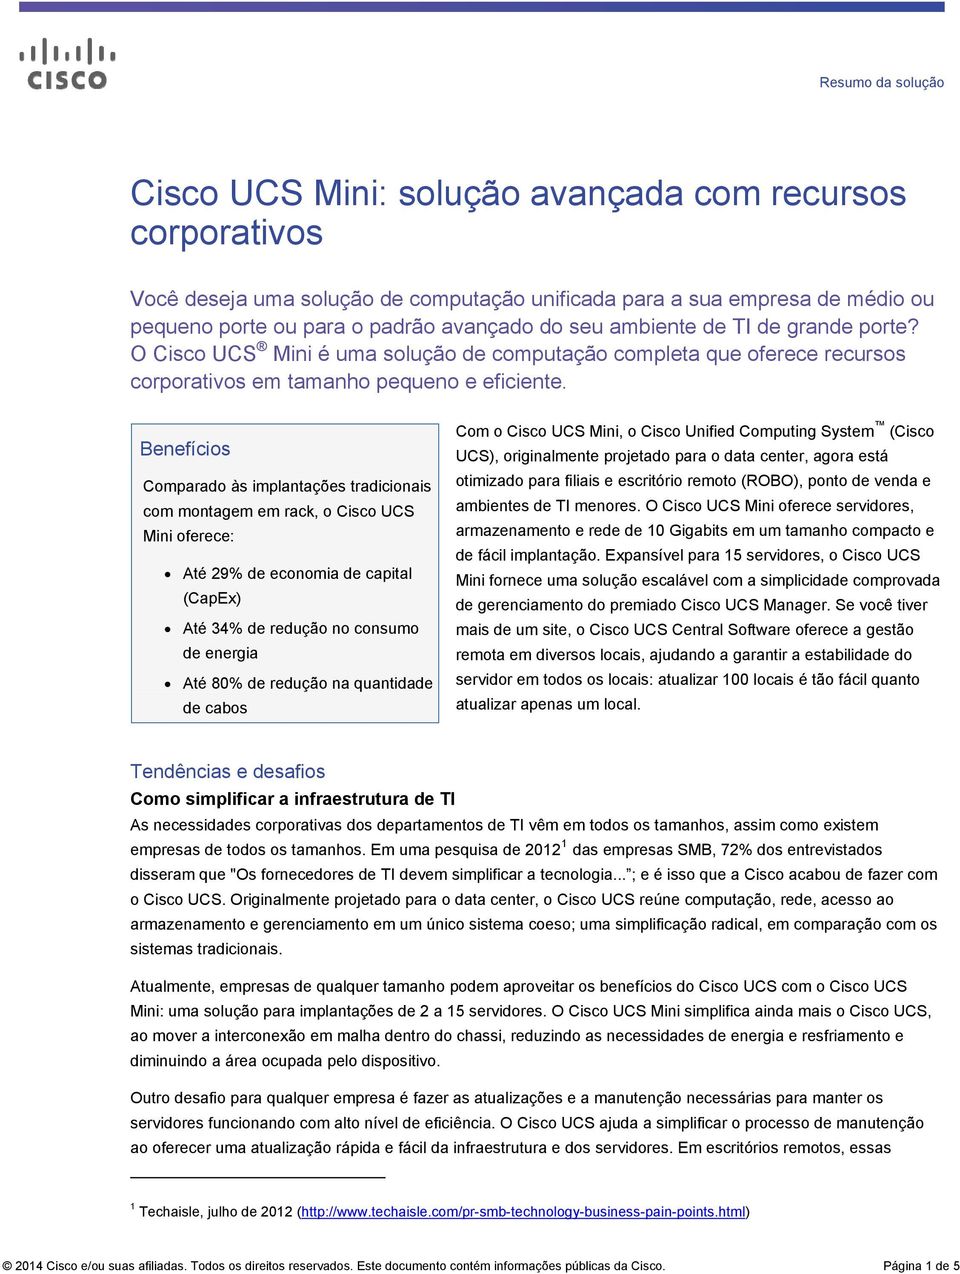 Benefícios Comparado às implantações tradicionais com montagem em rack, o Cisco UCS Mini oferece: Até 29% de economia de capital (CapEx) Até 34% de redução no consumo de energia Até 80% de redução na